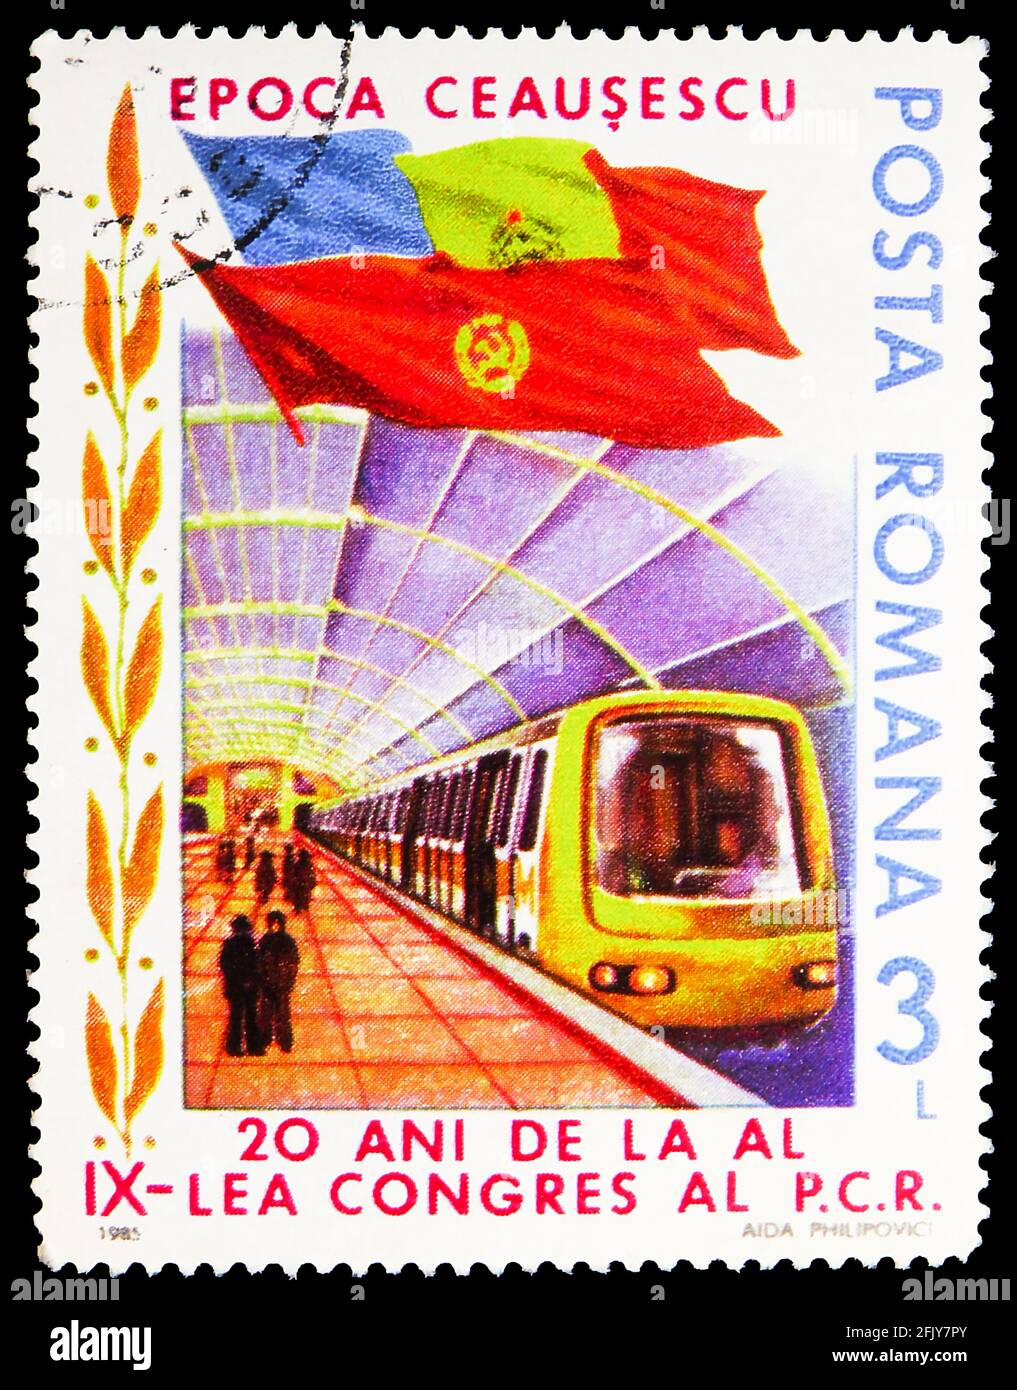 MOSCA, RUSSIA - 16 NOVEMBRE 2019: Francobollo stampato in Romania mostra Bucarest Underground, 20 ° anniversario di elezione Nicolae Ceausescu serie Foto Stock